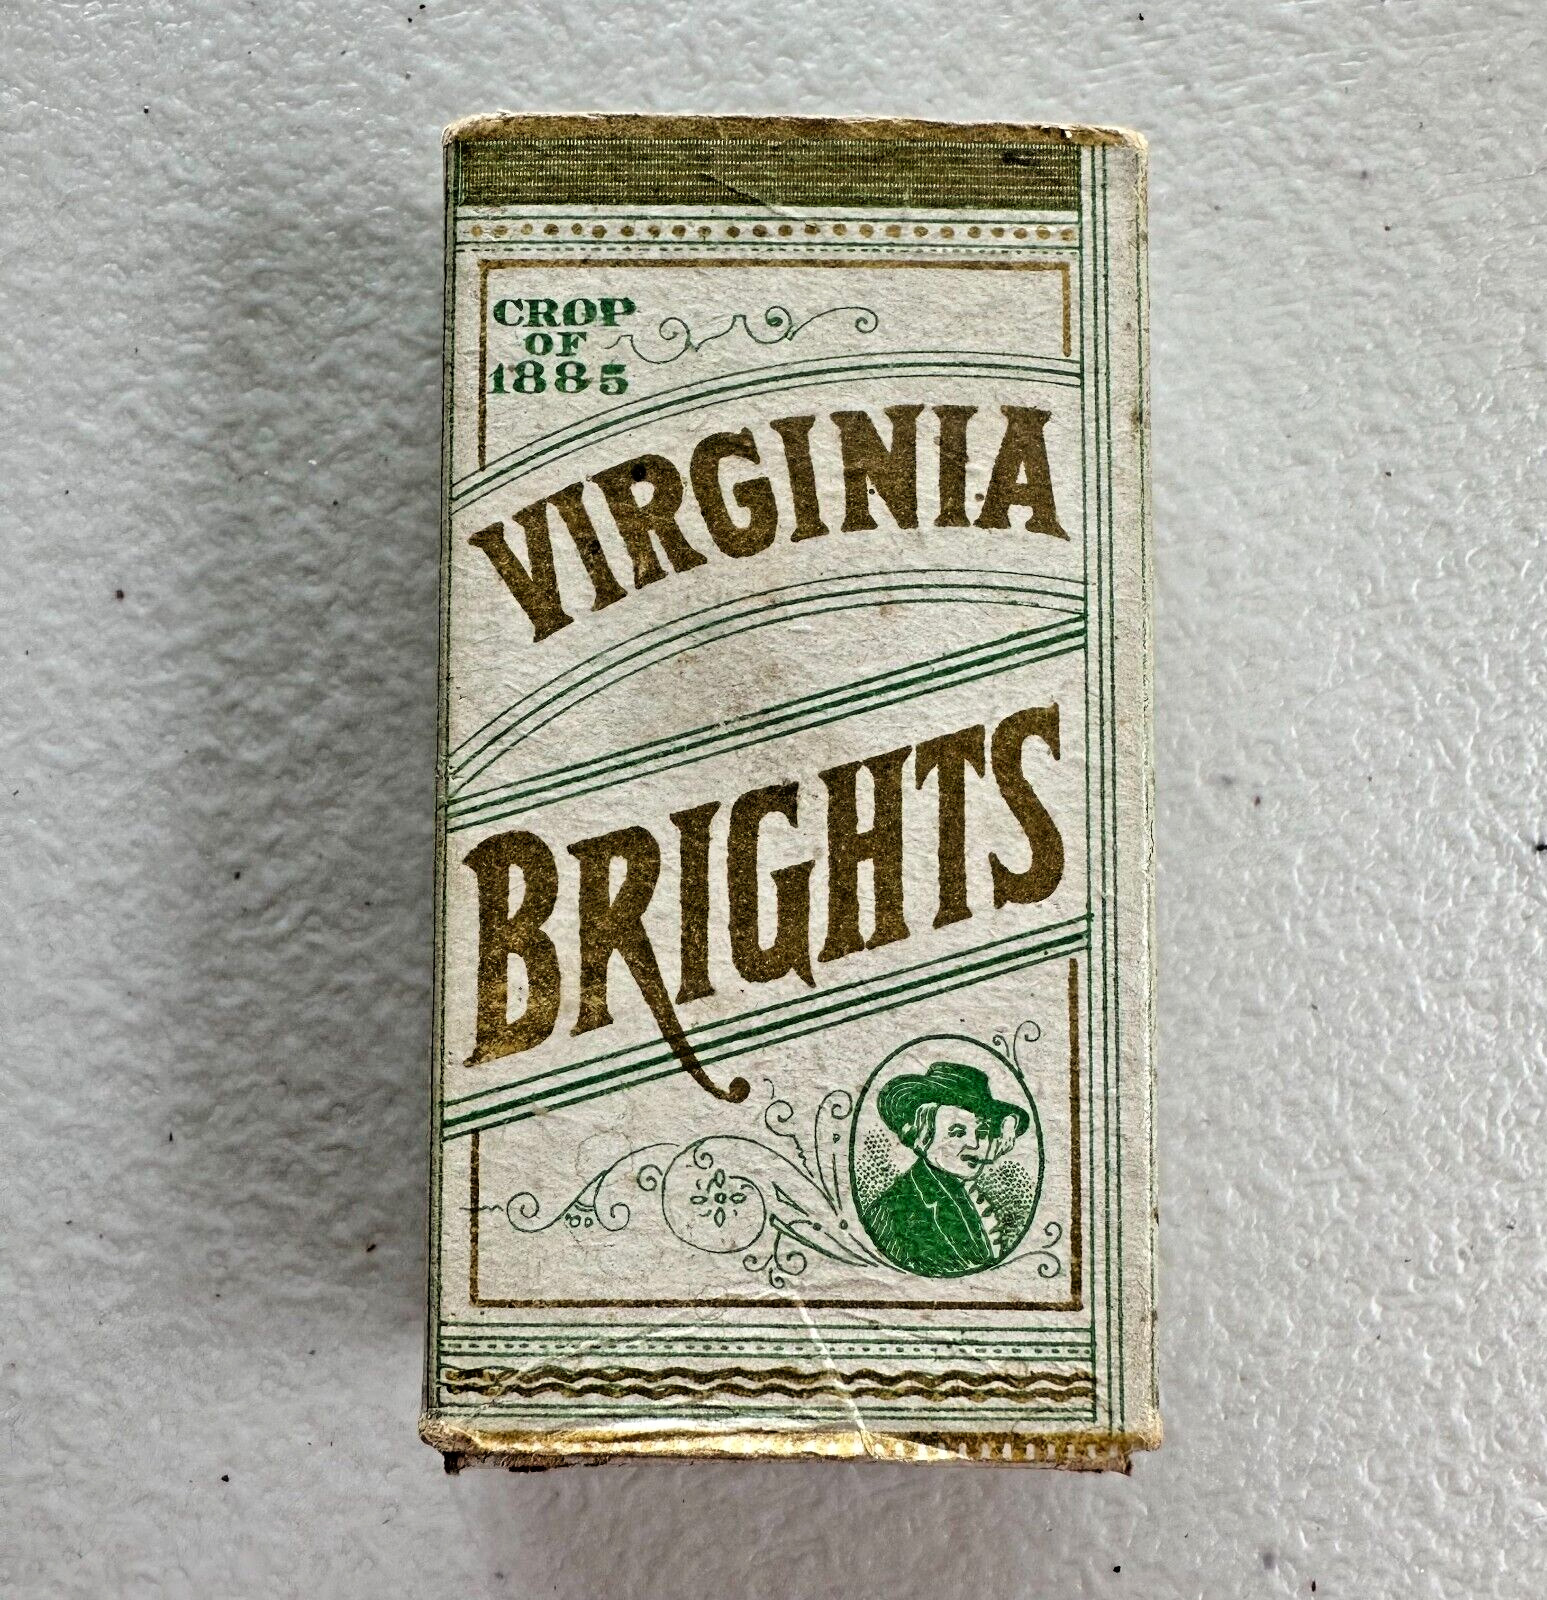 Rare VIRGINIA BRIGHTS Allen & Ginter Cigarette Slider Box Empty Pack Crop 1885